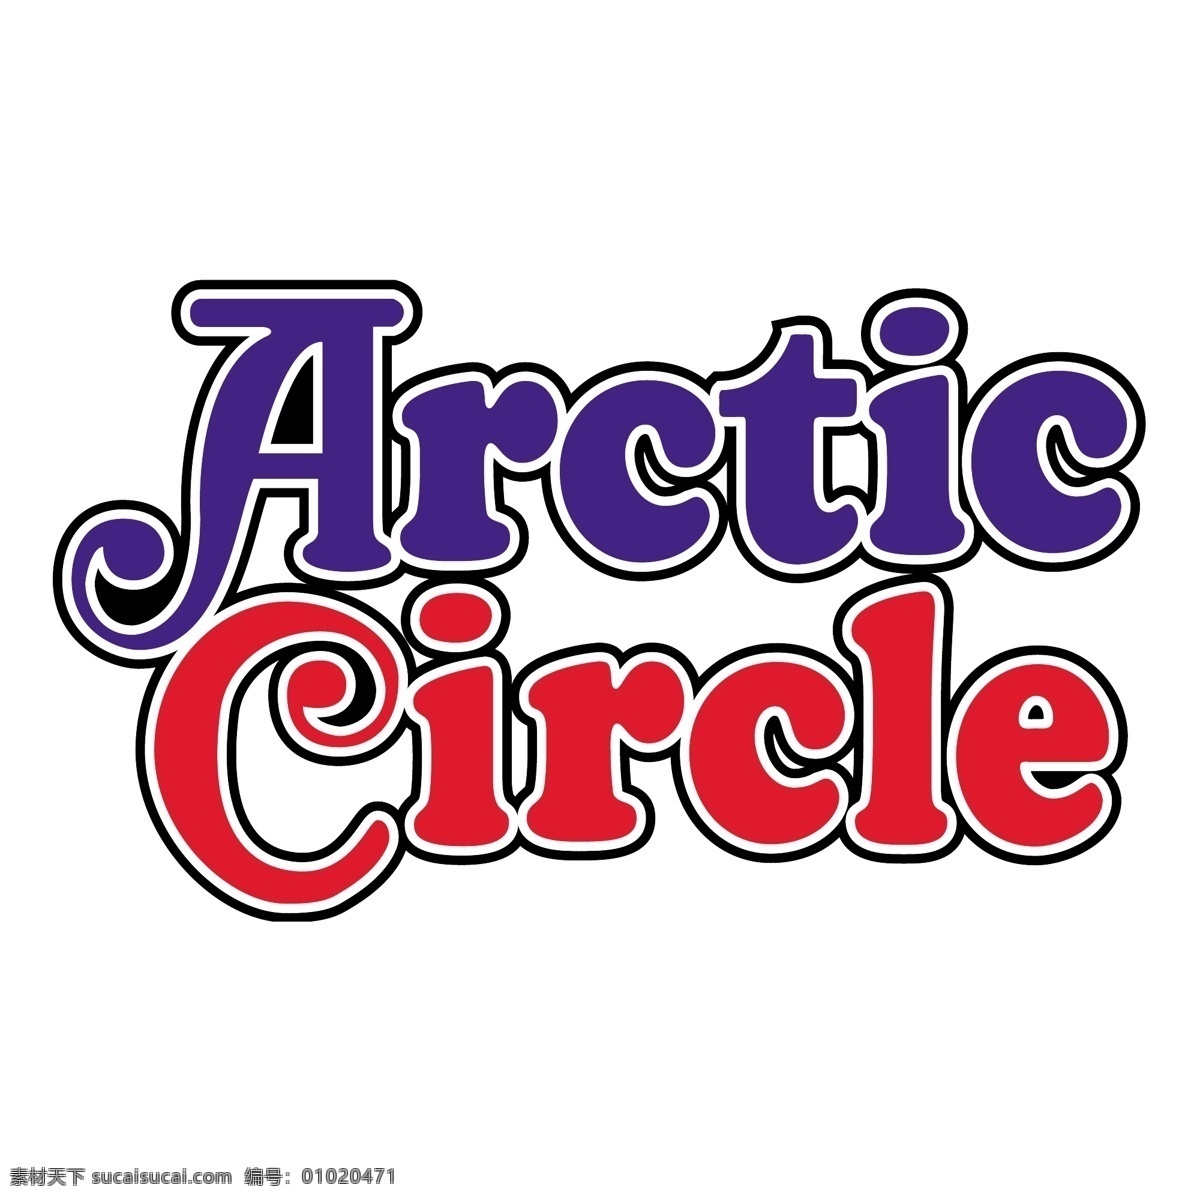 北极圈 免费 标志 psd源文件 logo设计